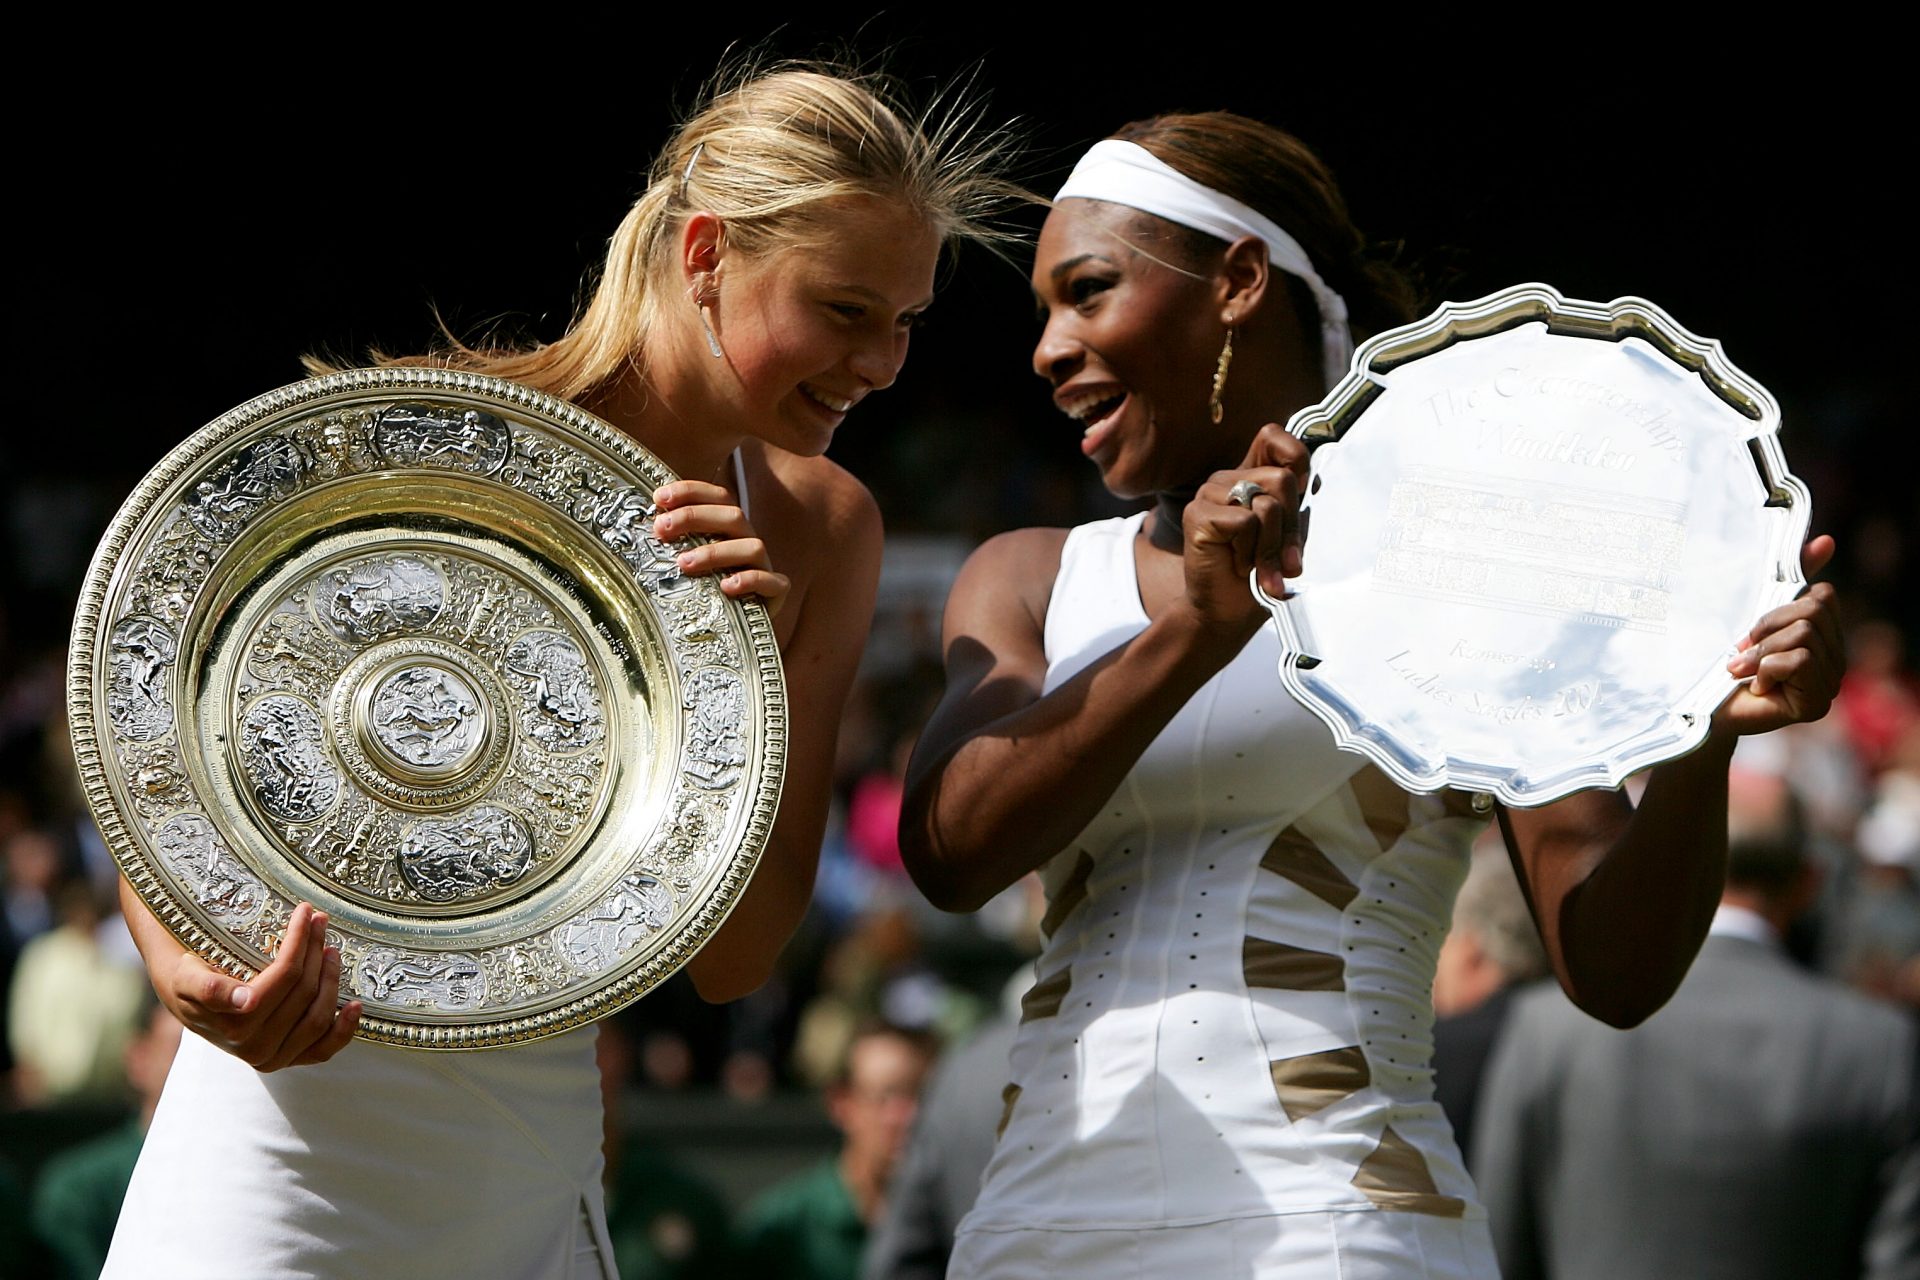 Sieg über Serena Williams